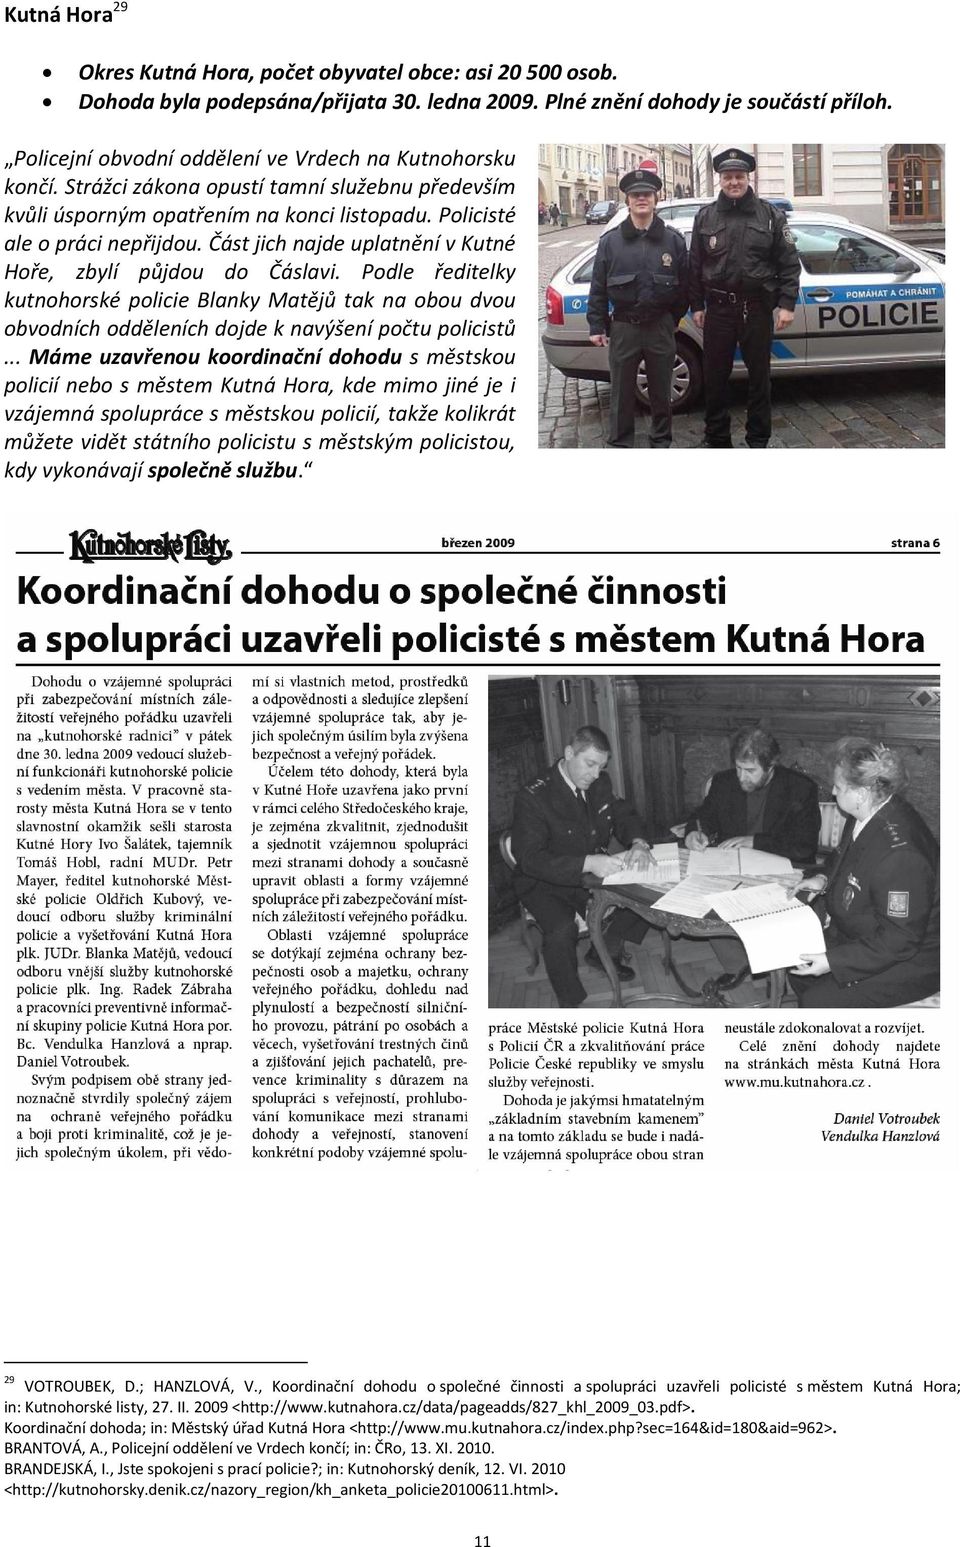 Část jich najde uplatnění v Kutné Hoře, zbylí půjdou do Čáslavi. Podle ředitelky kutnohorské policie Blanky Matějů tak na obou dvou obvodních odděleních dojde k navýšení počtu policistů.